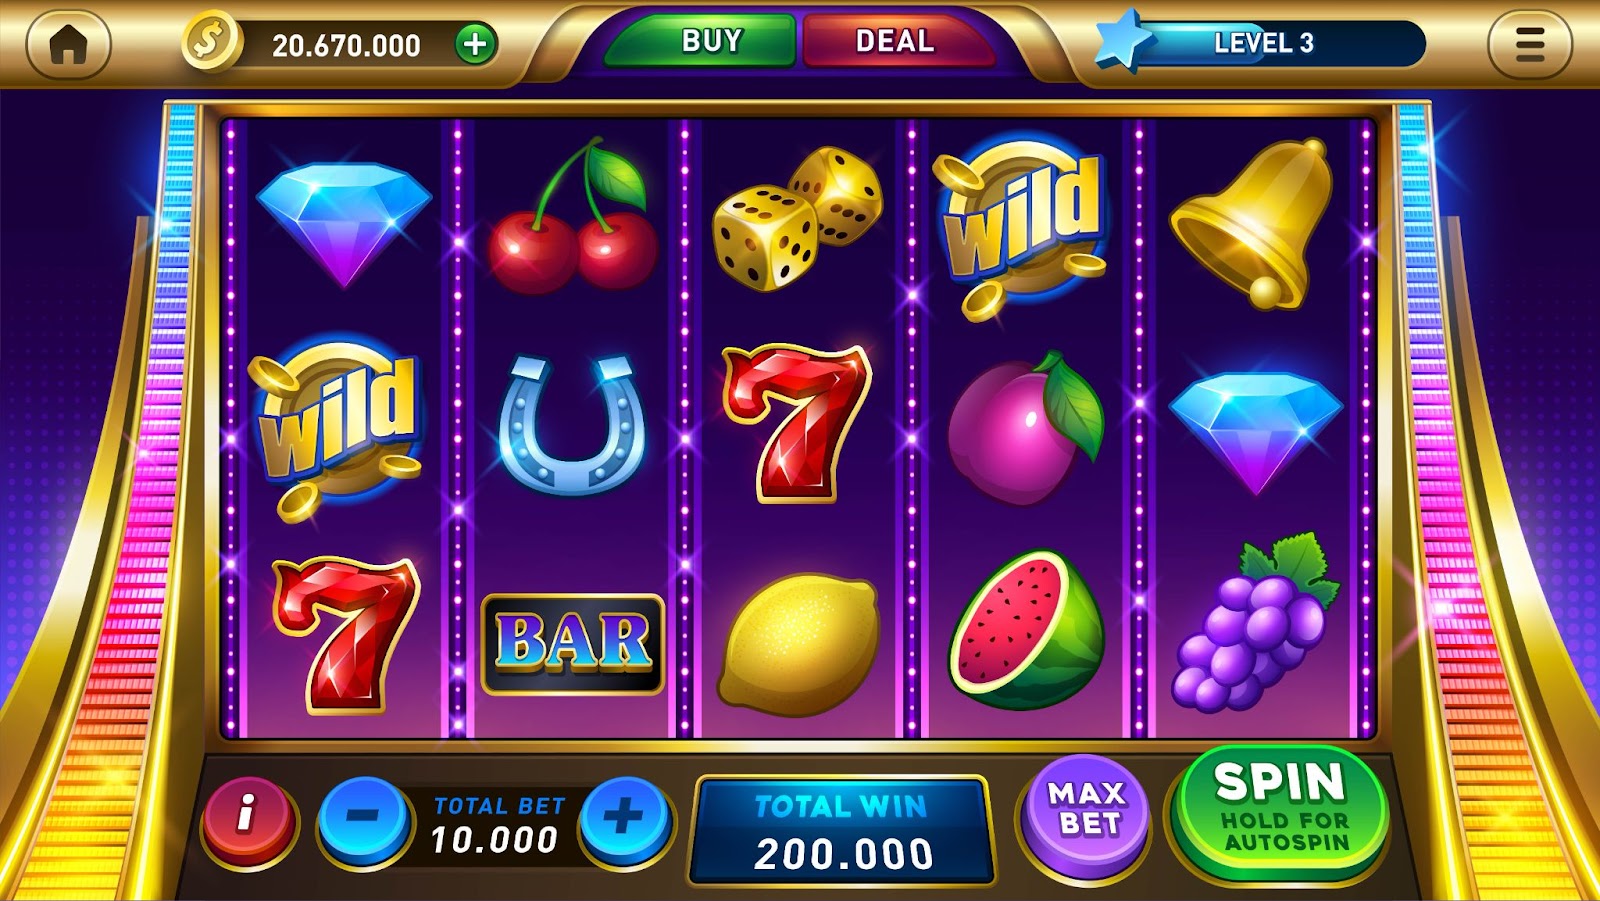 Una captura de pantalla vibrante de un juego de máquina tragamonedas virtual que muestra varios símbolos como frutas, campanas y comodines con botones para opciones de juego.